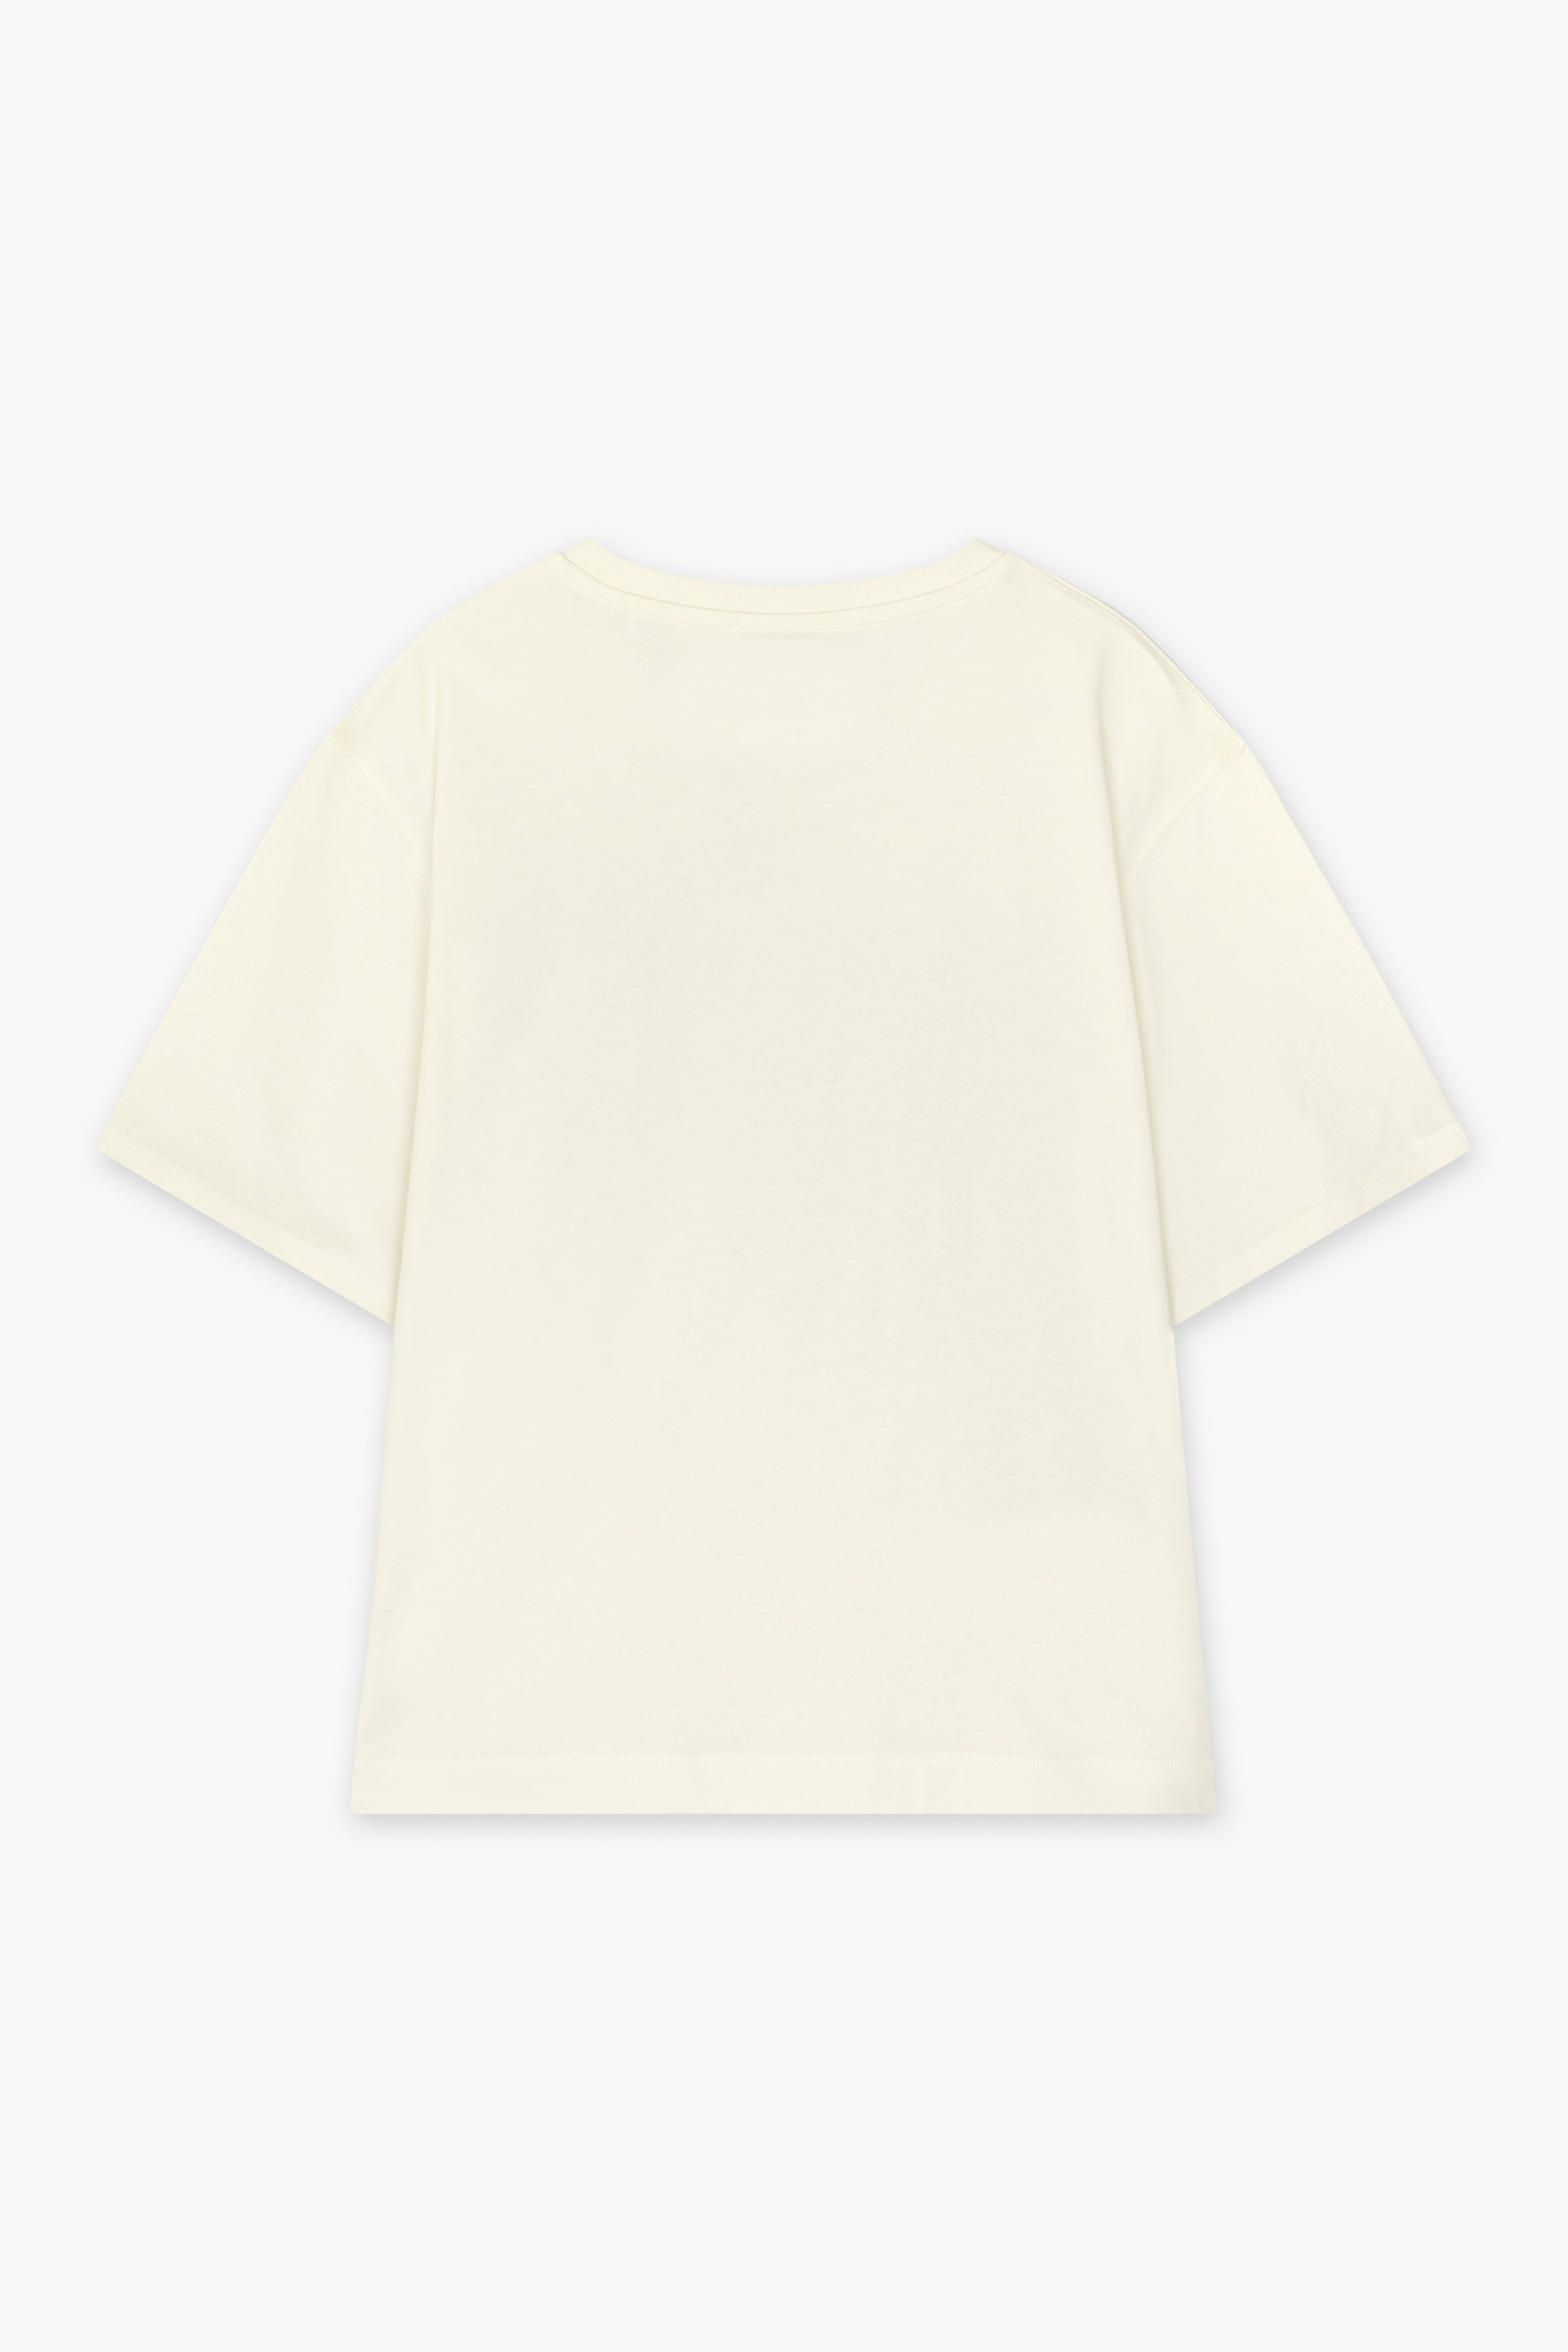 CKS Dames - SARIA - T-Shirt Kurzarm - Weiß